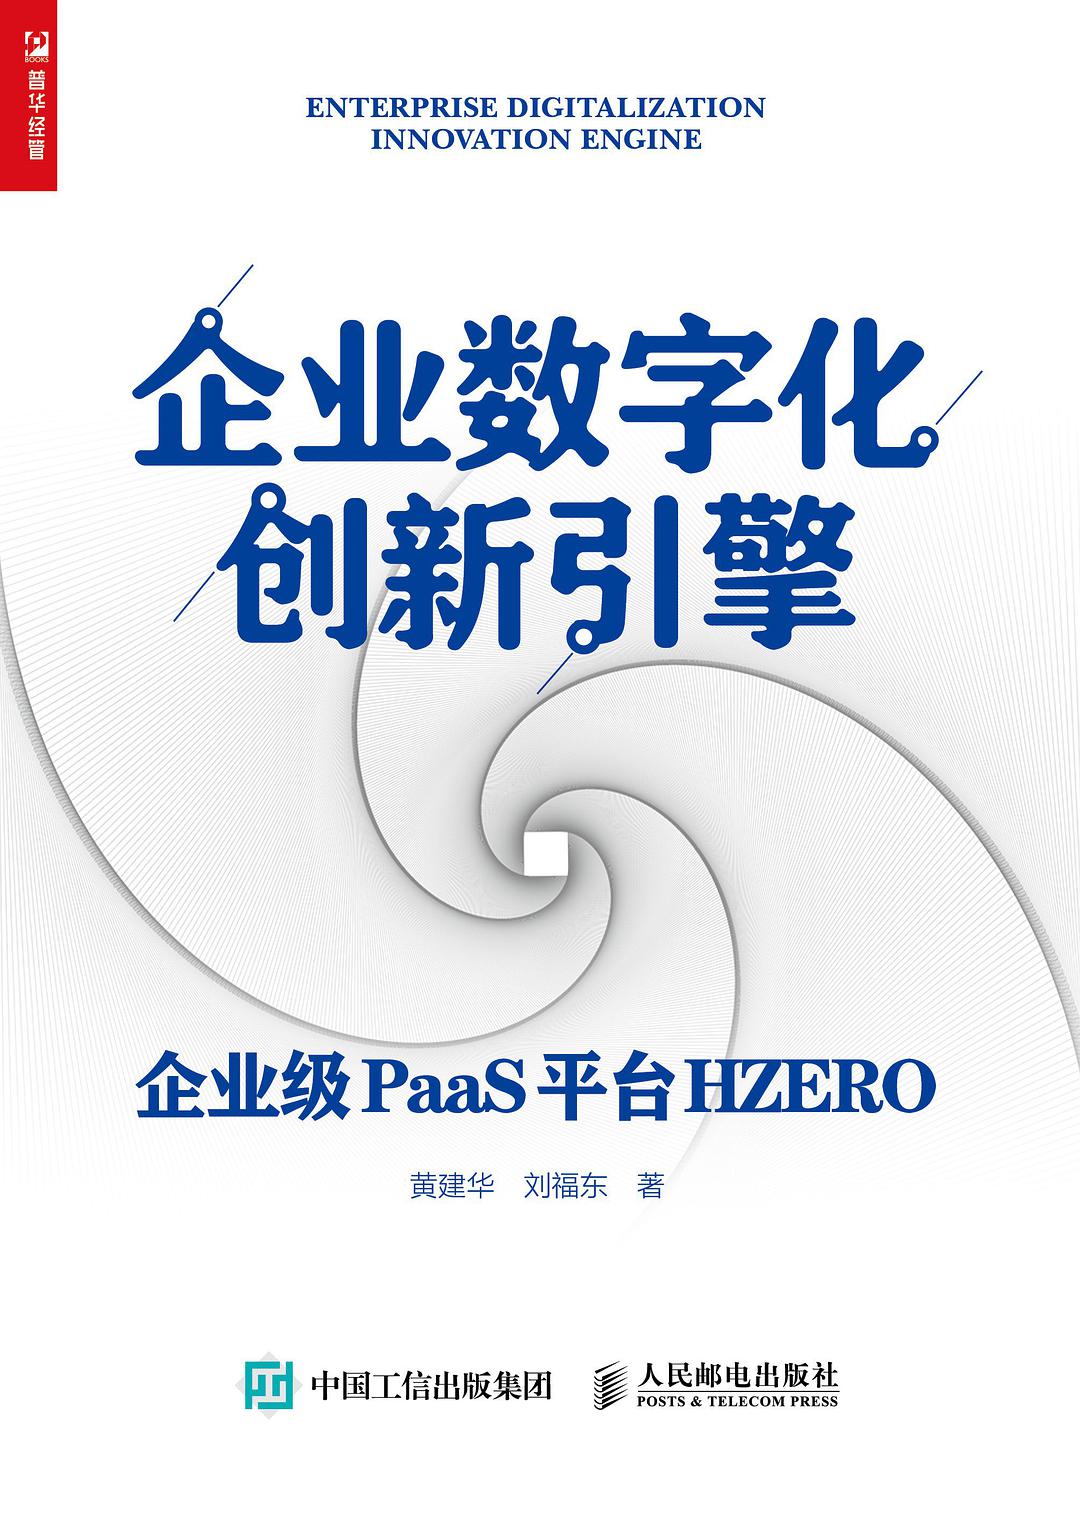 企业数字化创新引擎 企业级PaaS平台HZERO